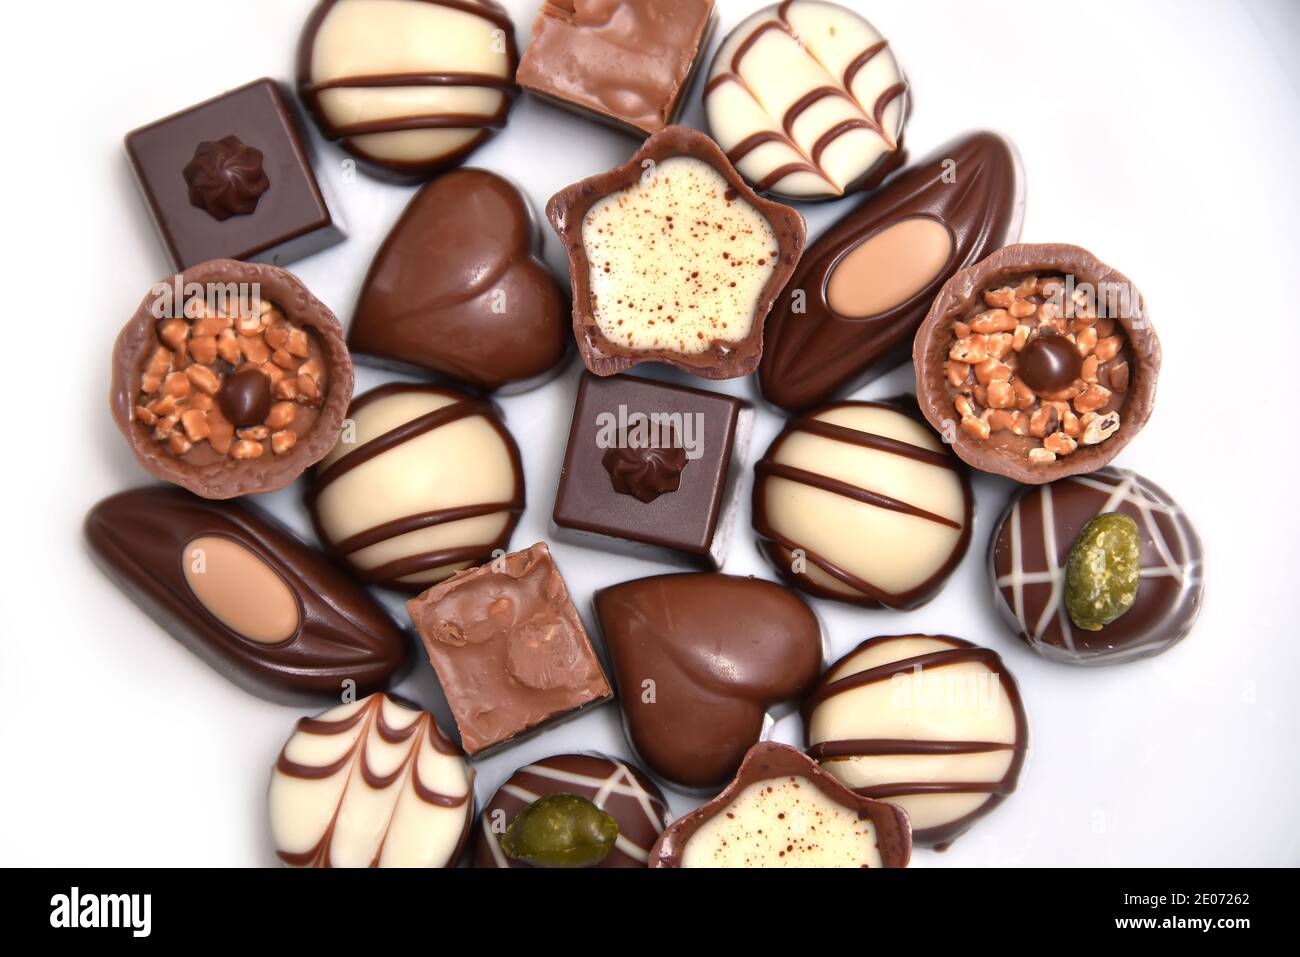 Primo piano con una selezione di cioccolatini di lusso, con una varietà di forme tra cui un cuore, fiorentini e pistacchi. Sono in bianco, latte e dar Foto Stock